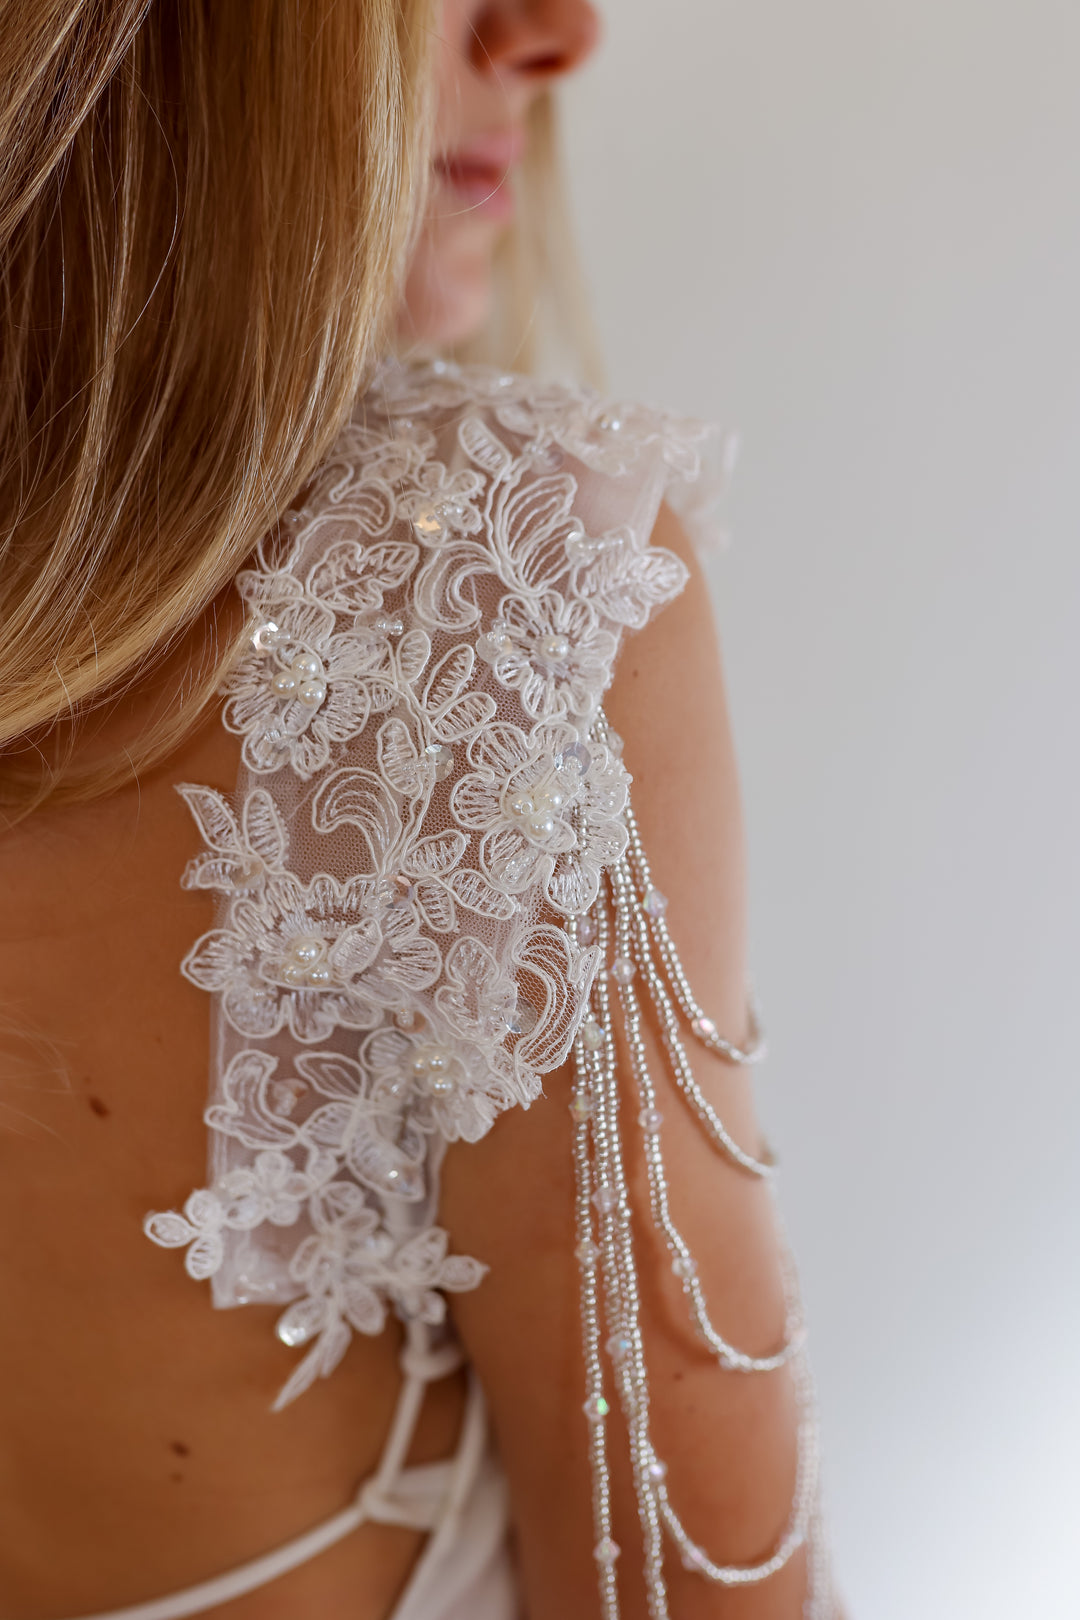 Lace Bridal Epaulettes Sleeves With Crystal Chains  sleeve wedding dress - StudioSharonGuy